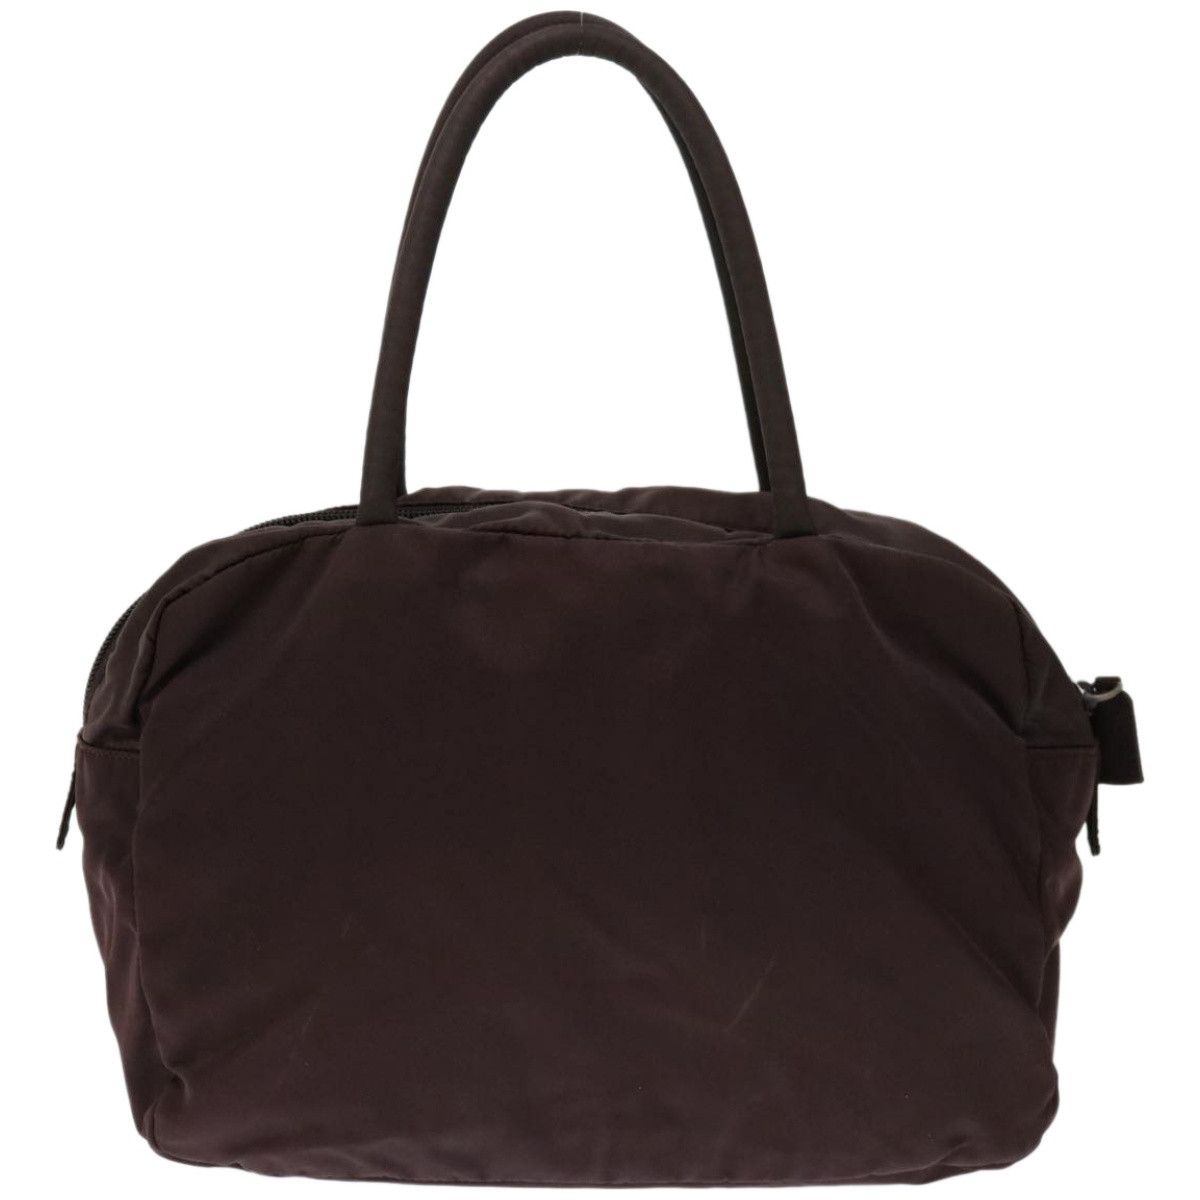 Prada Prada Tessuto handbag Size ONE SIZE - 2 Preview